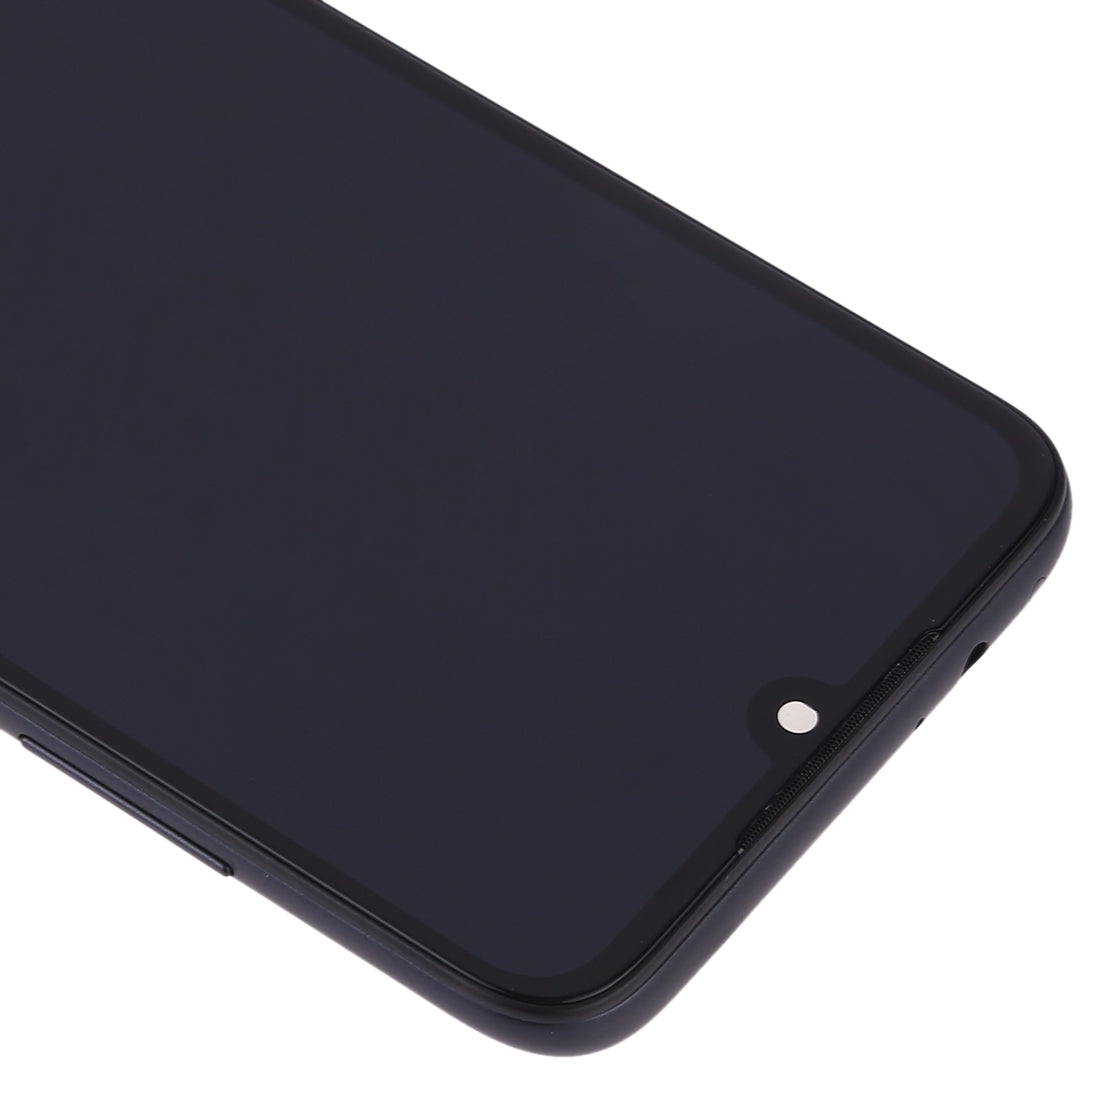 Pantalla Completa LCD + Tactil + Marco Xiaomi Redmi 7 Negro